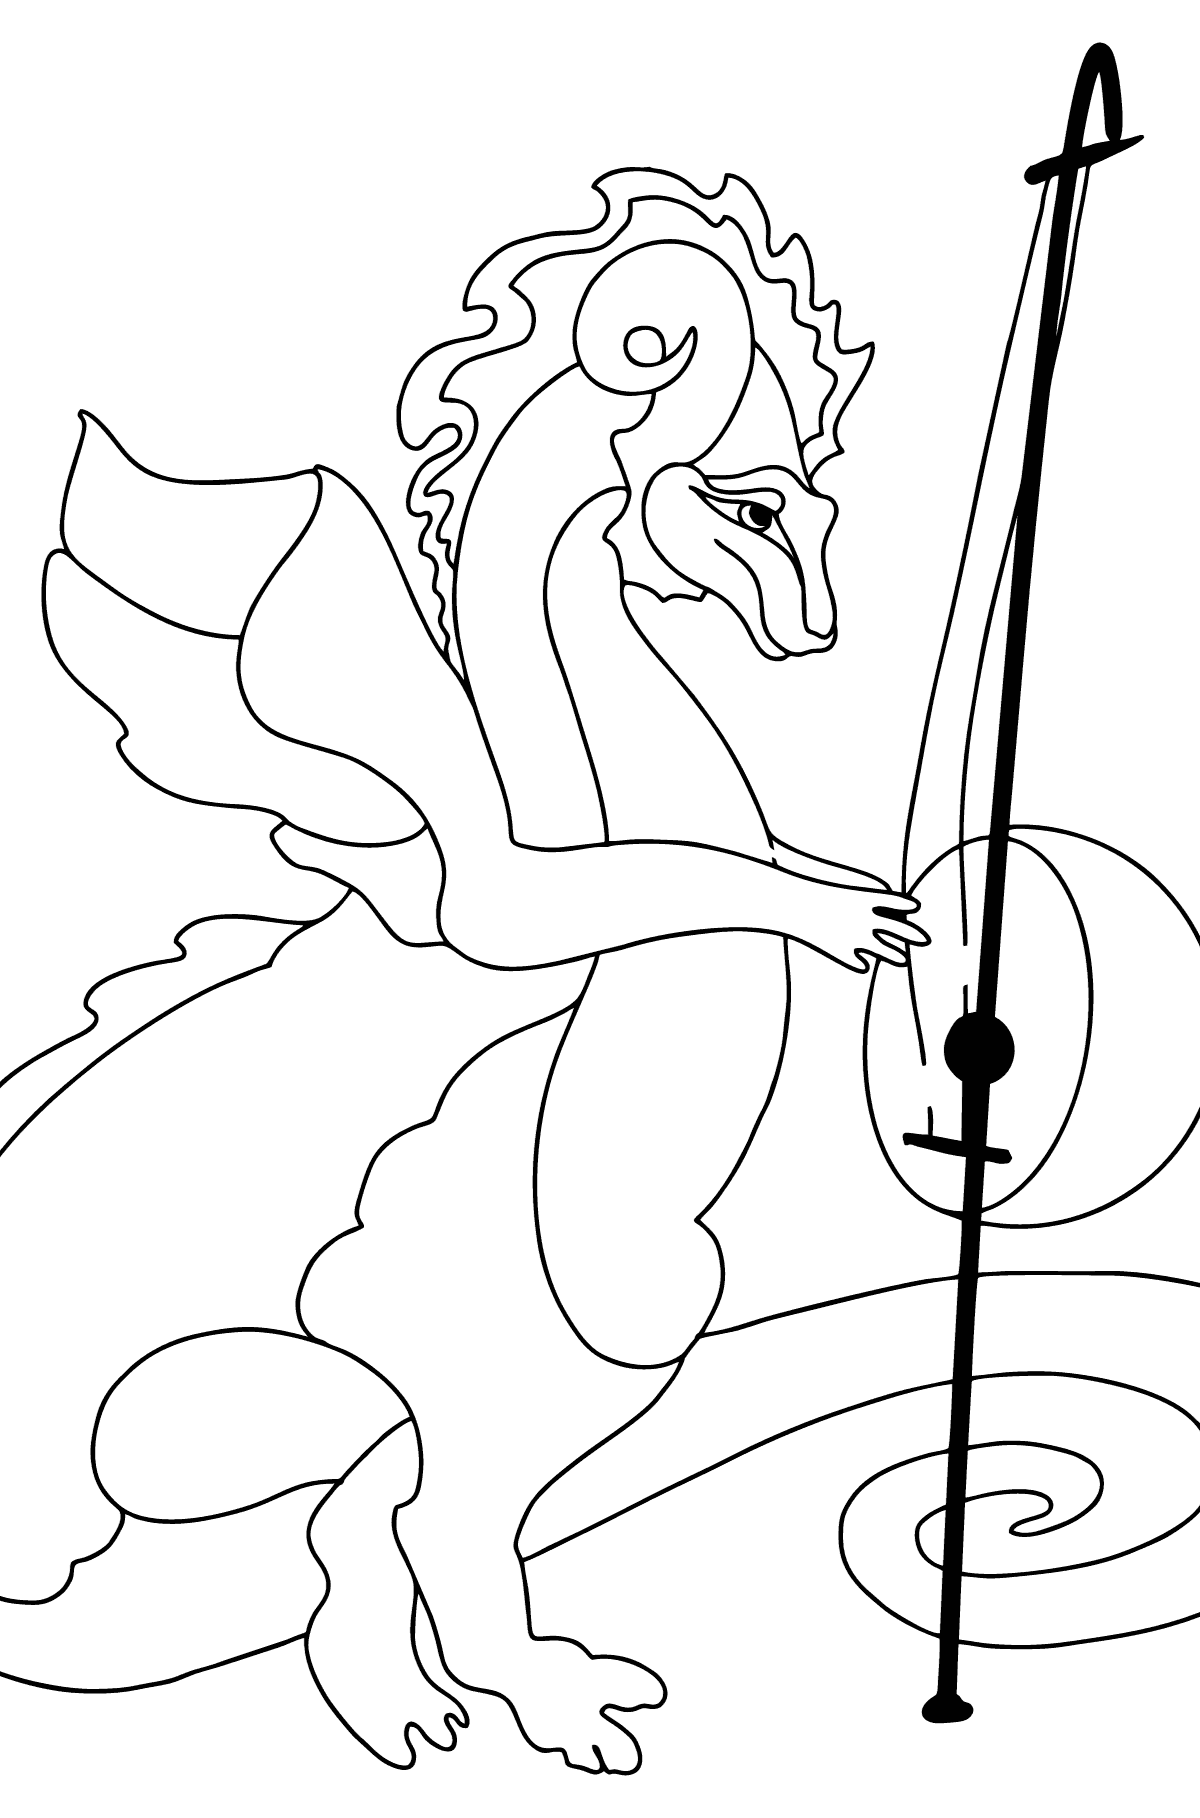 Desen de colorat dragon curcubeu (simplu) - Desene de colorat pentru copii